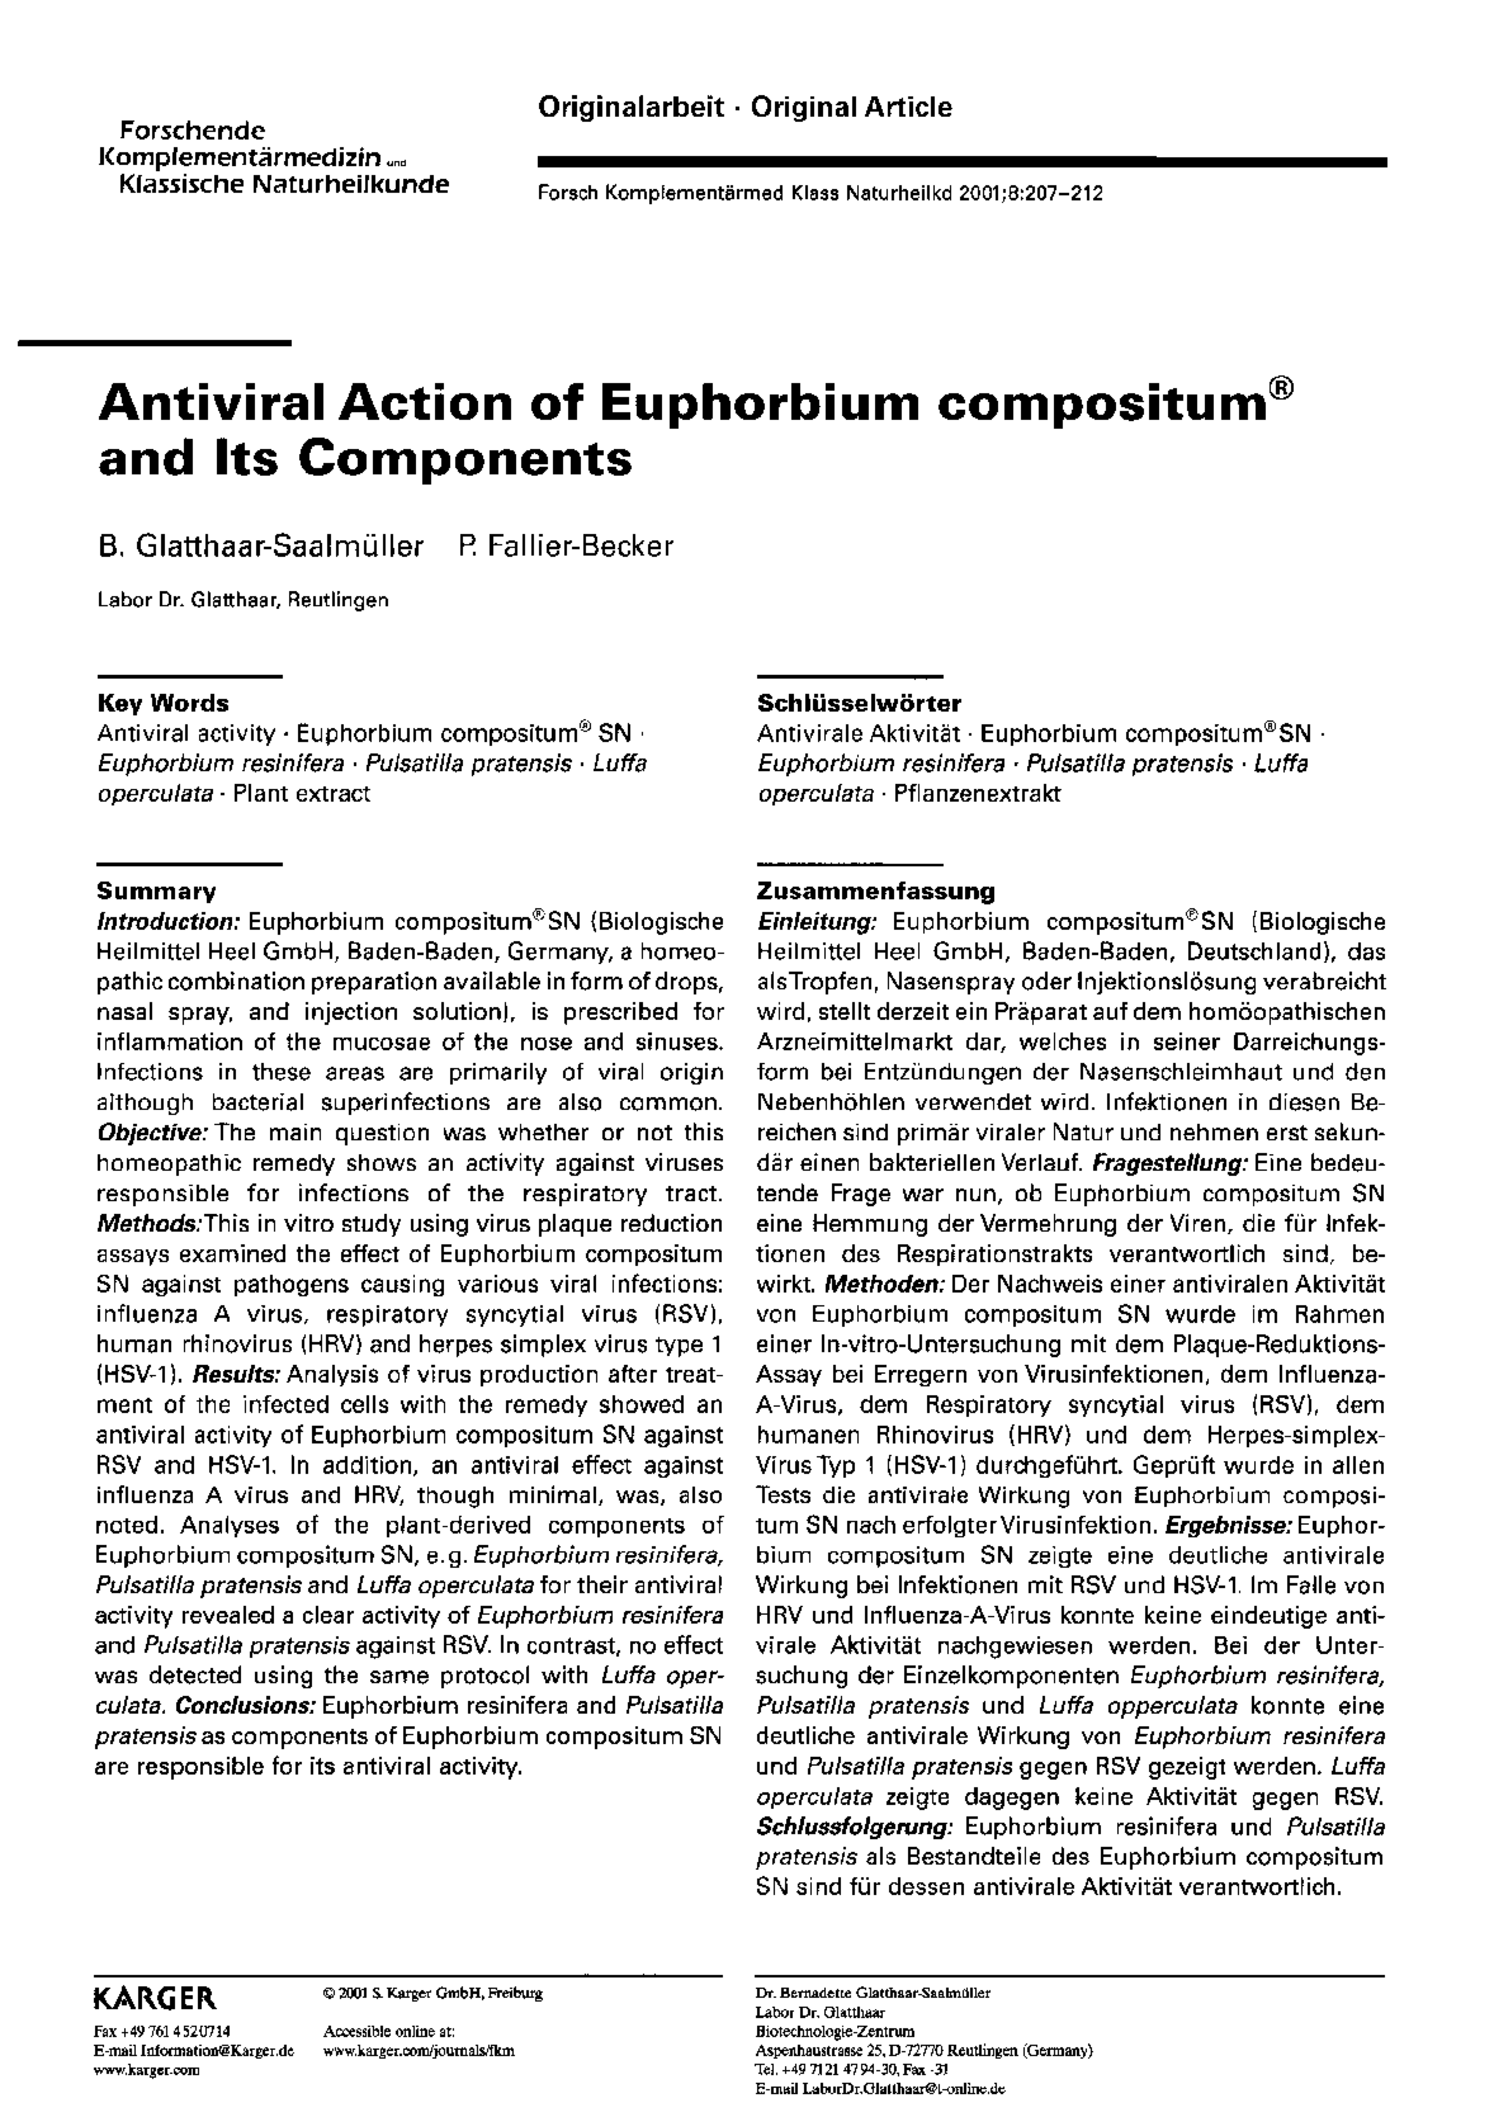 Euphorbium Compositum Tabletten afbeelding van document #1, productonderzoek